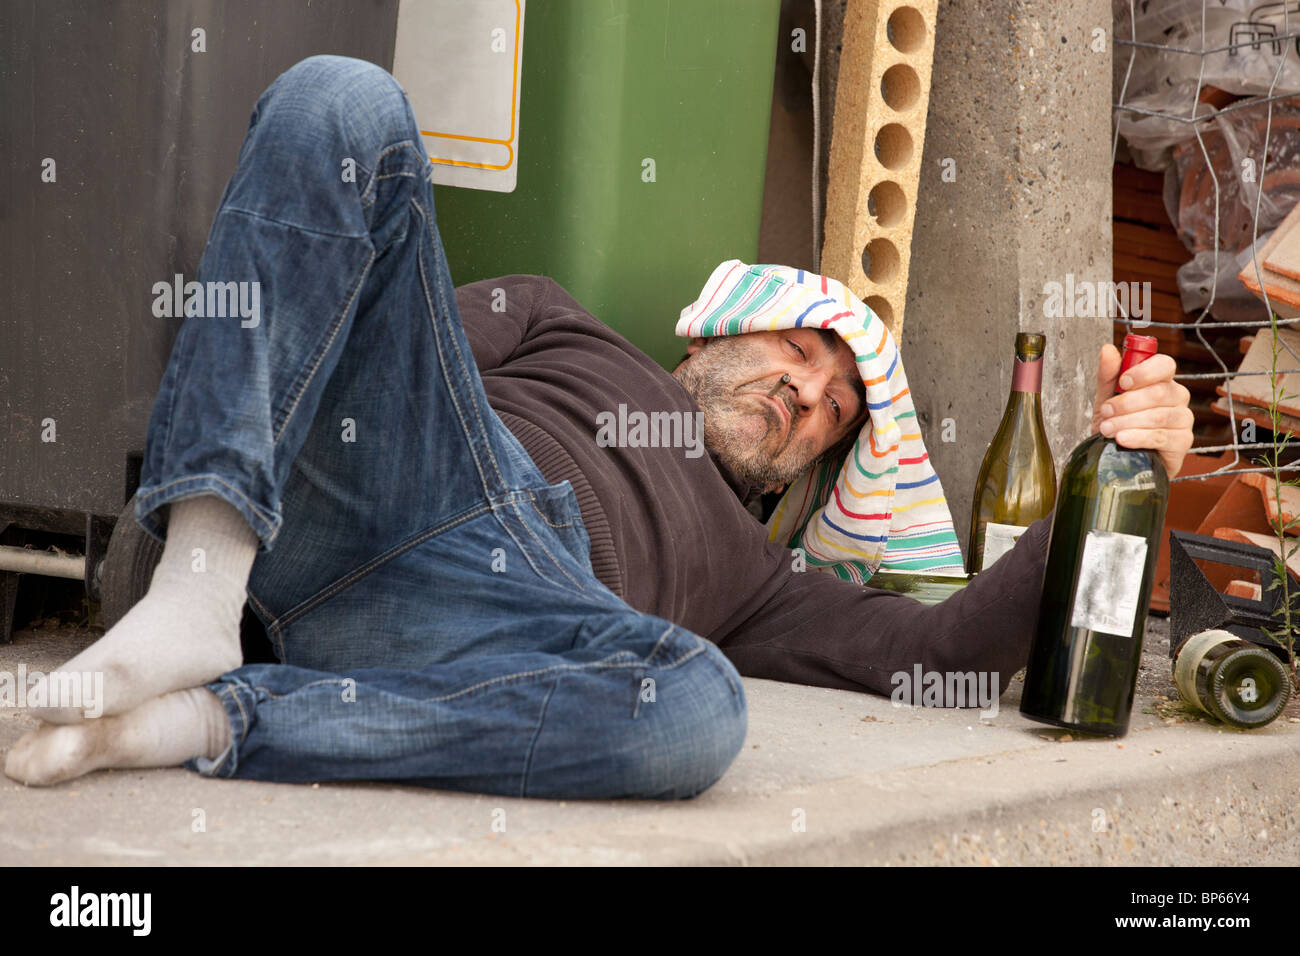 Betrunkene Person Stockfotos und -bilder Kaufen - Alamy